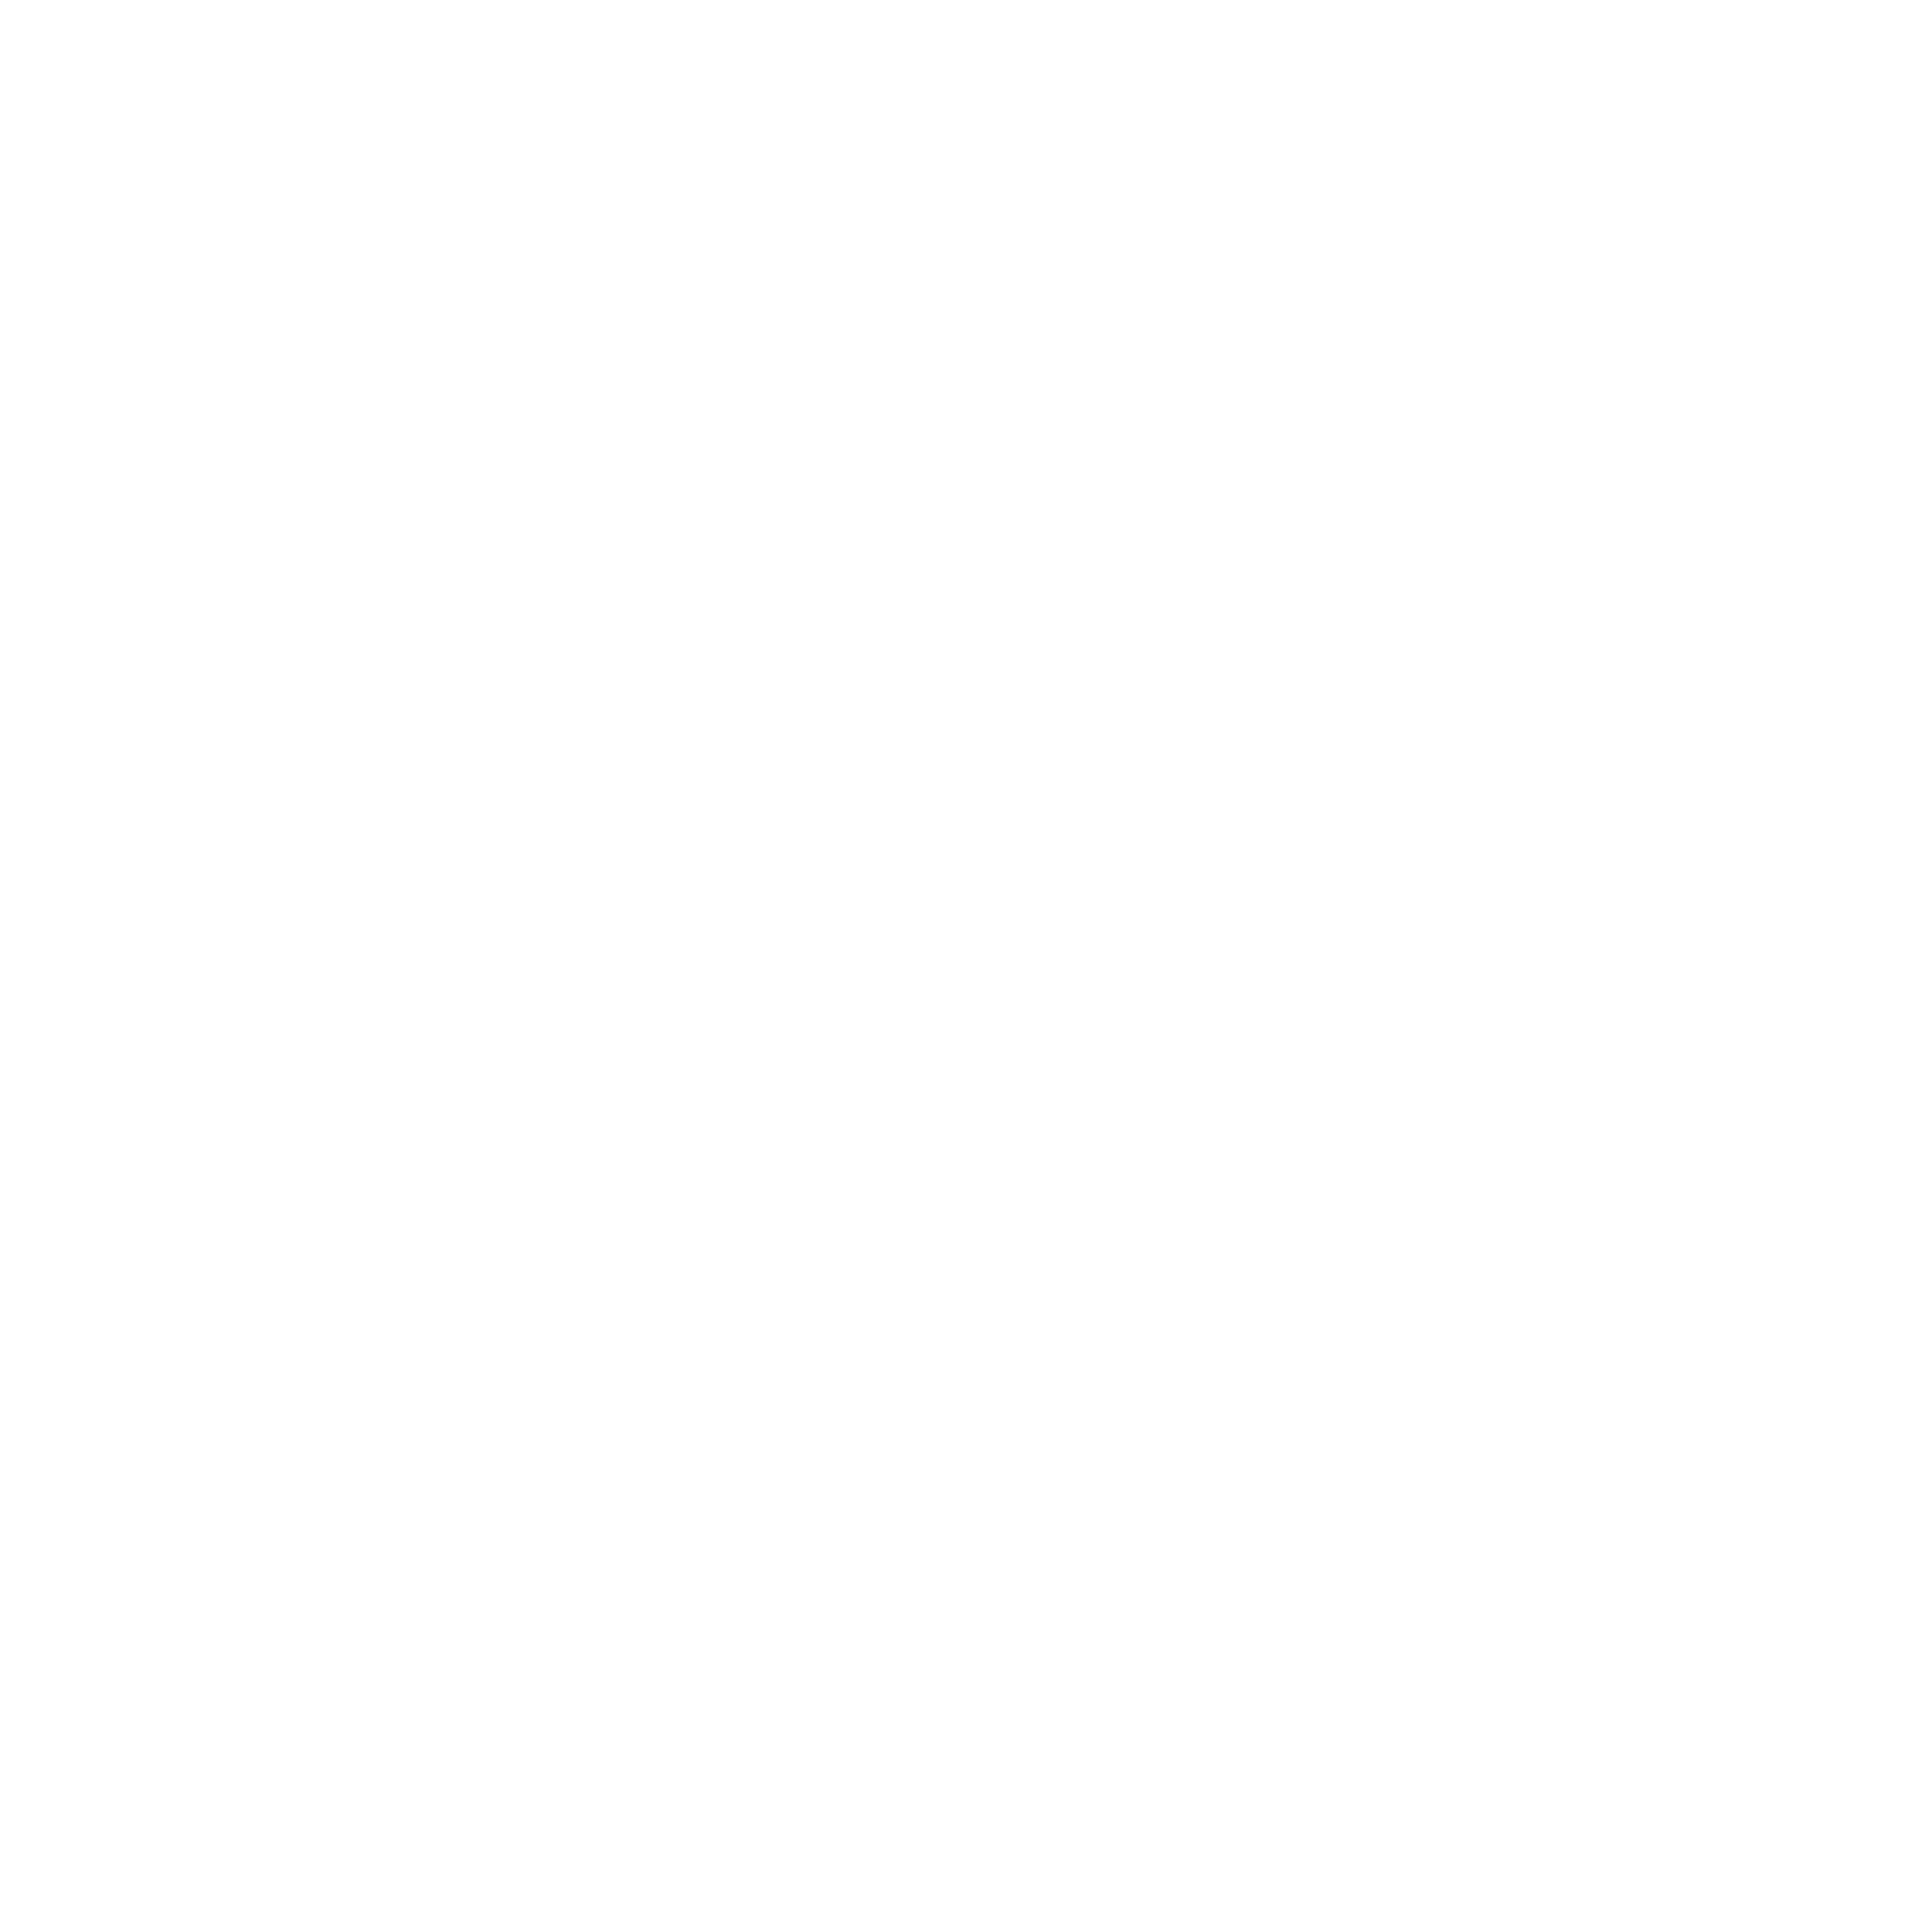 Arthur Baugier